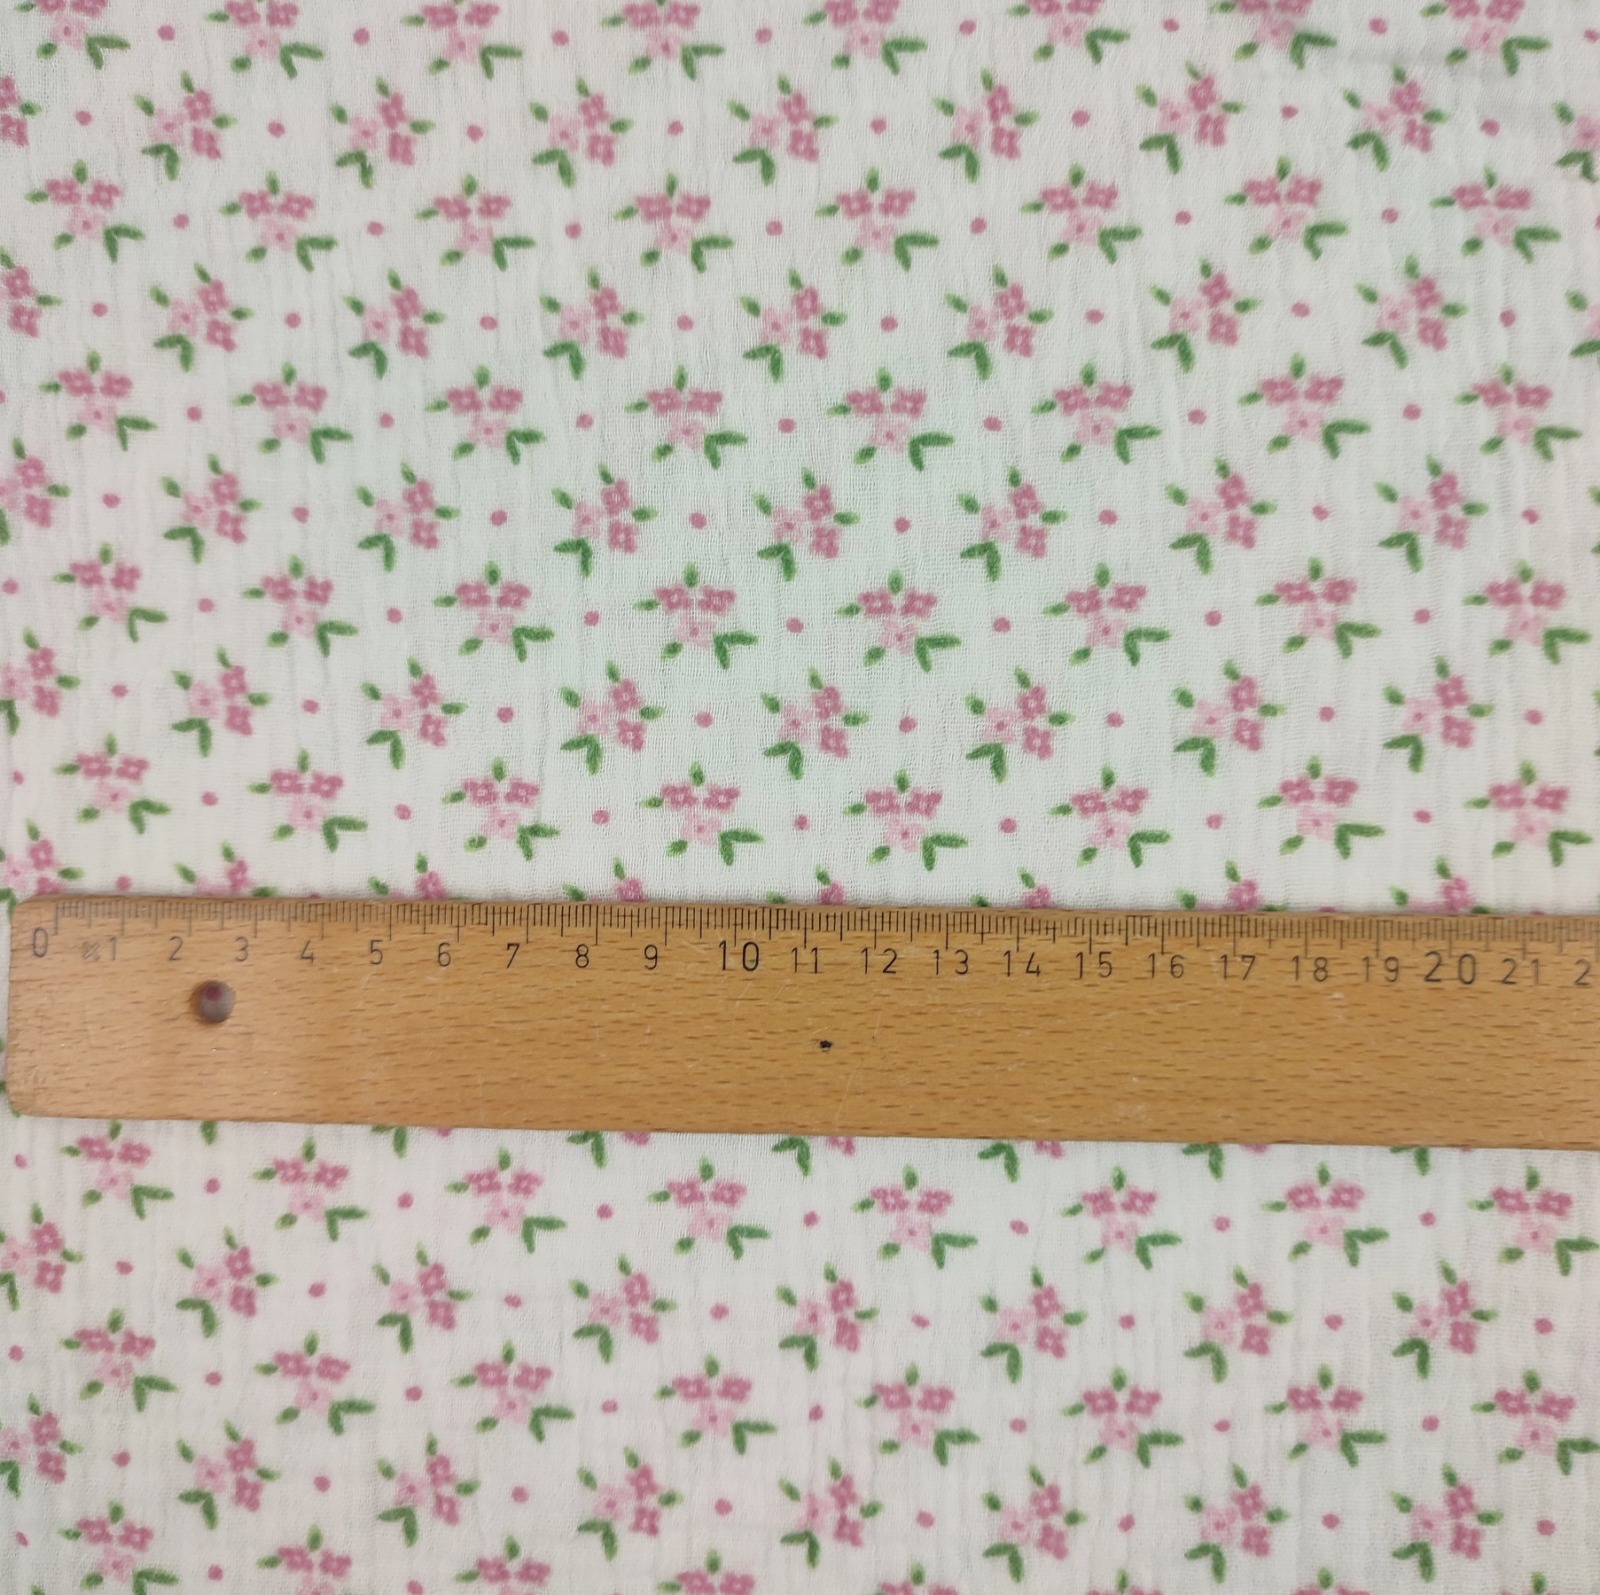 Musselin 13,20 EUR/m Druck - weiß mit kleinen Streublümchen in rosa - Stoff Meterware 3